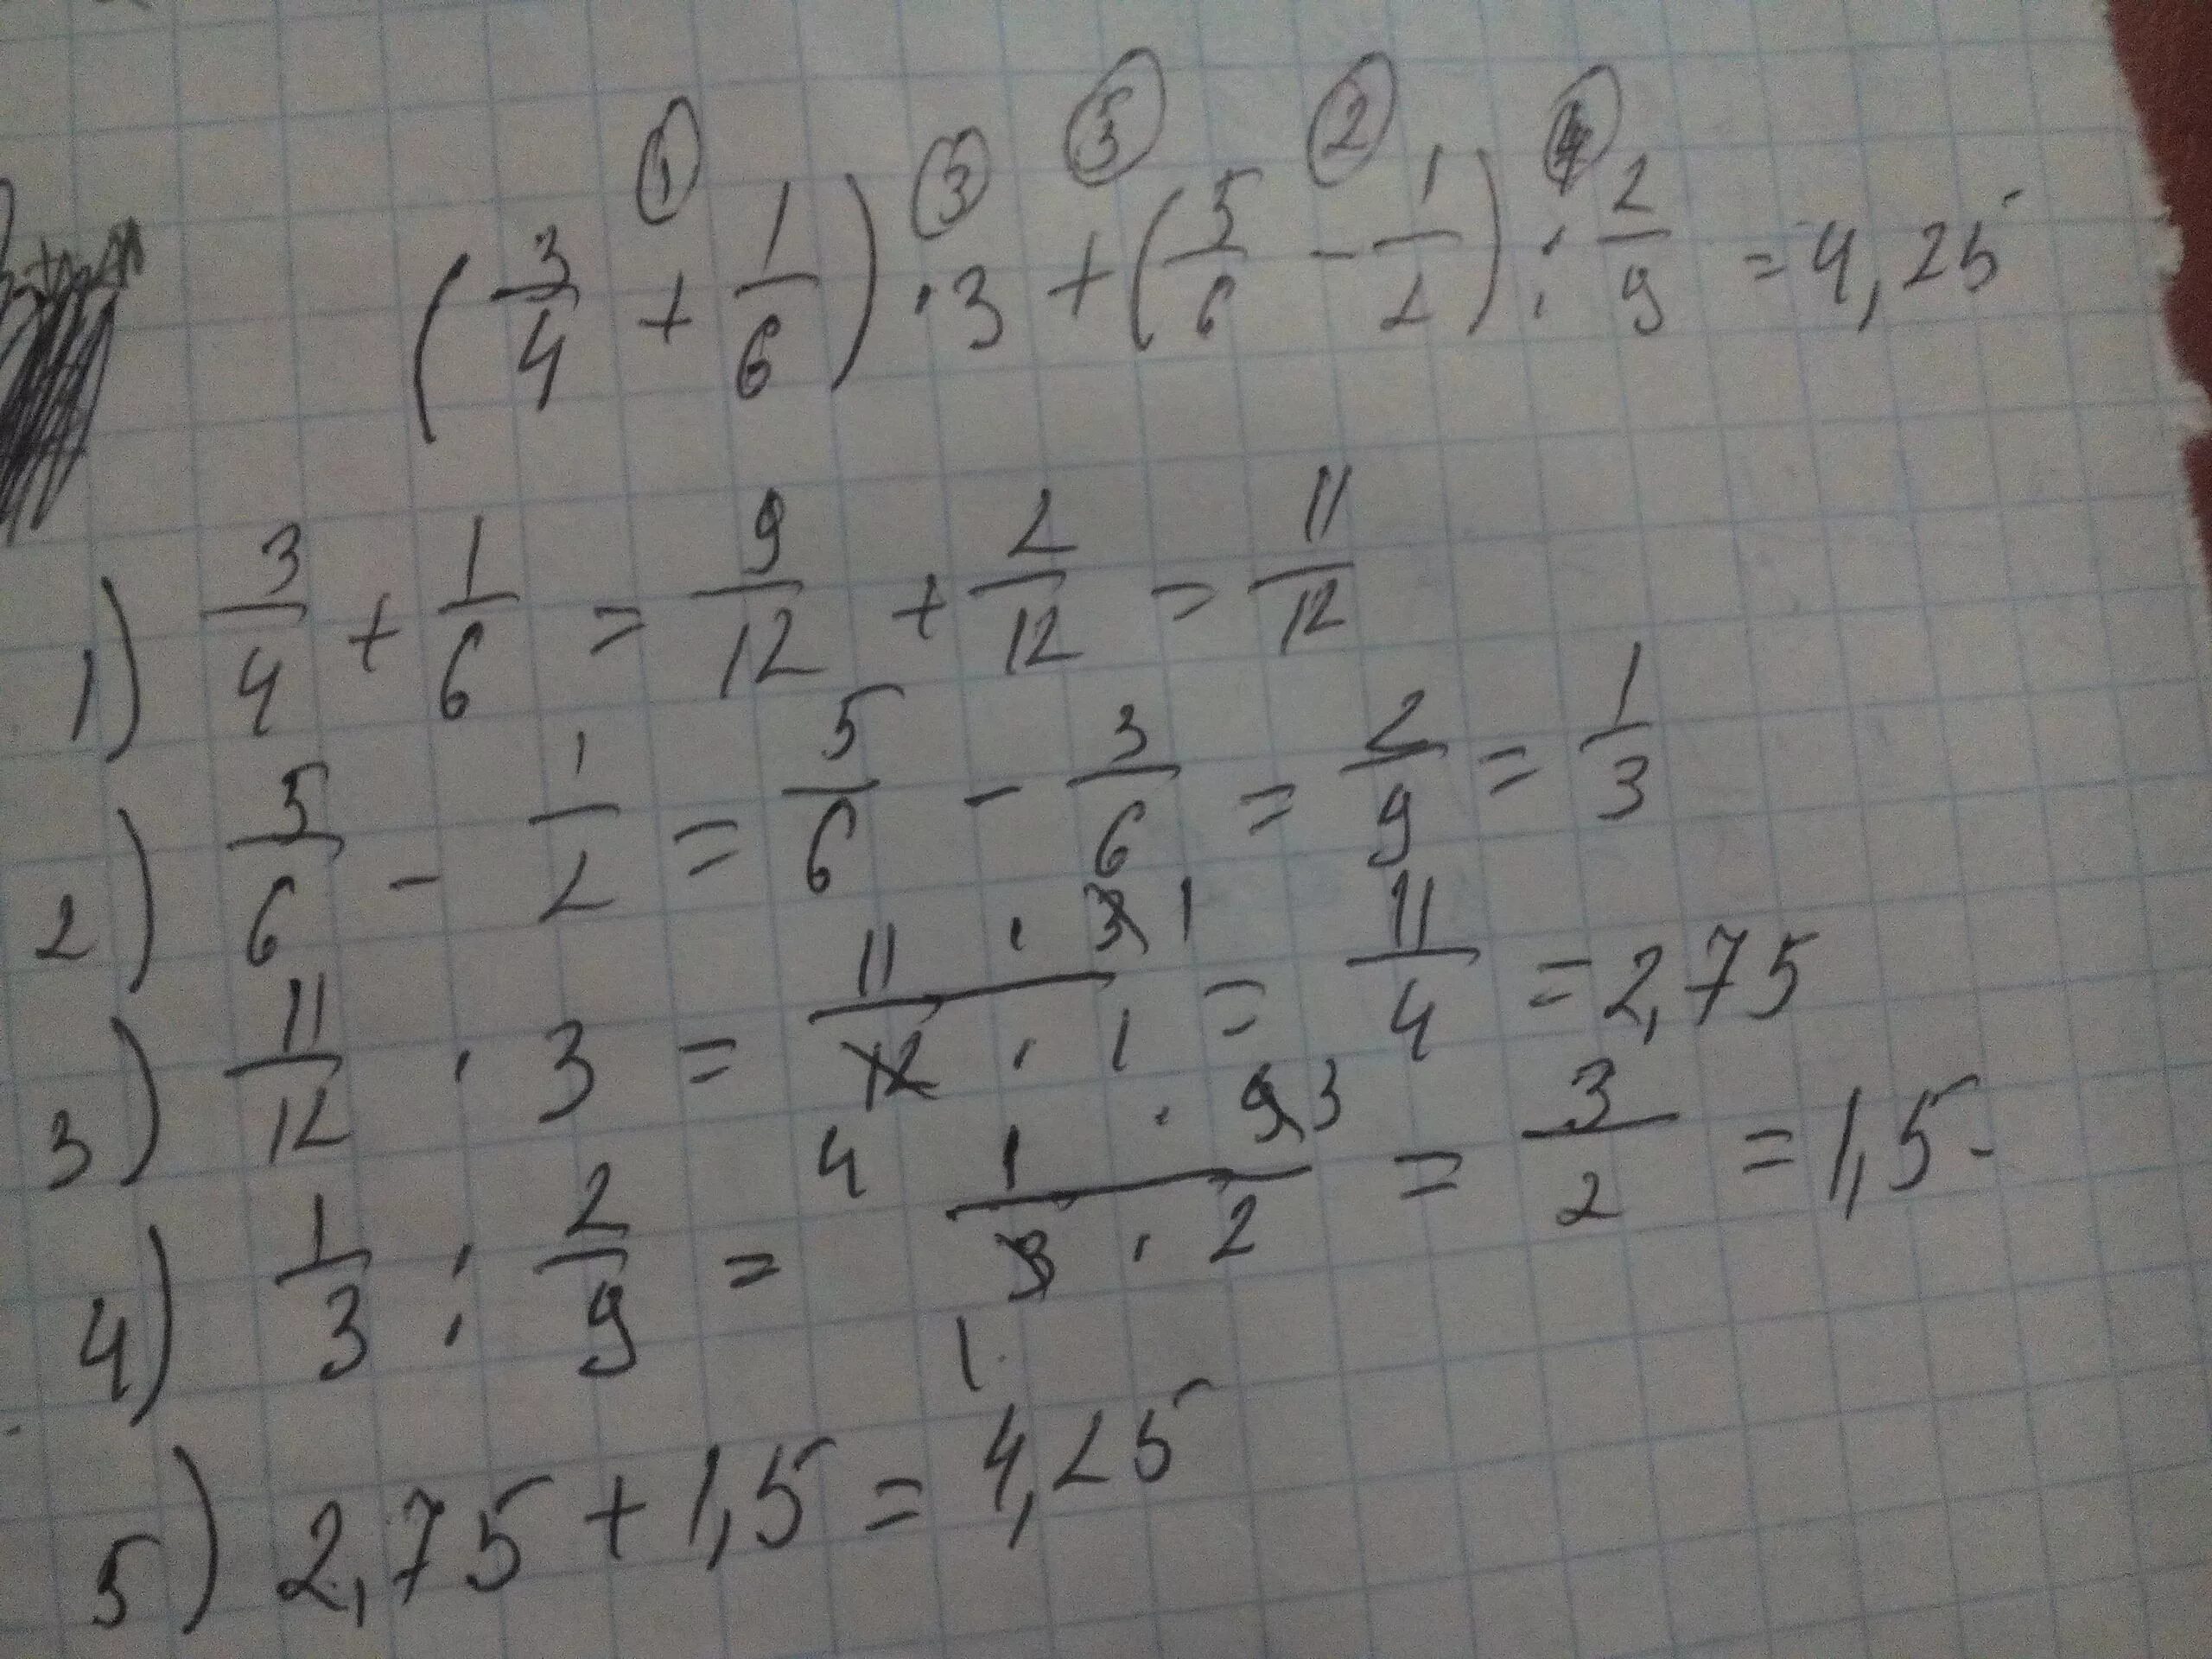 3.5 6.2. (3/4+1/6)*3+(5/6-1/2):2/9. -1/3+(-1/2)=2/6+3/6. (5-1 5/6): (2 2/3-1 2/5). (1 4/9+2 5/6-2 3/4):(2 1/2-1/4).